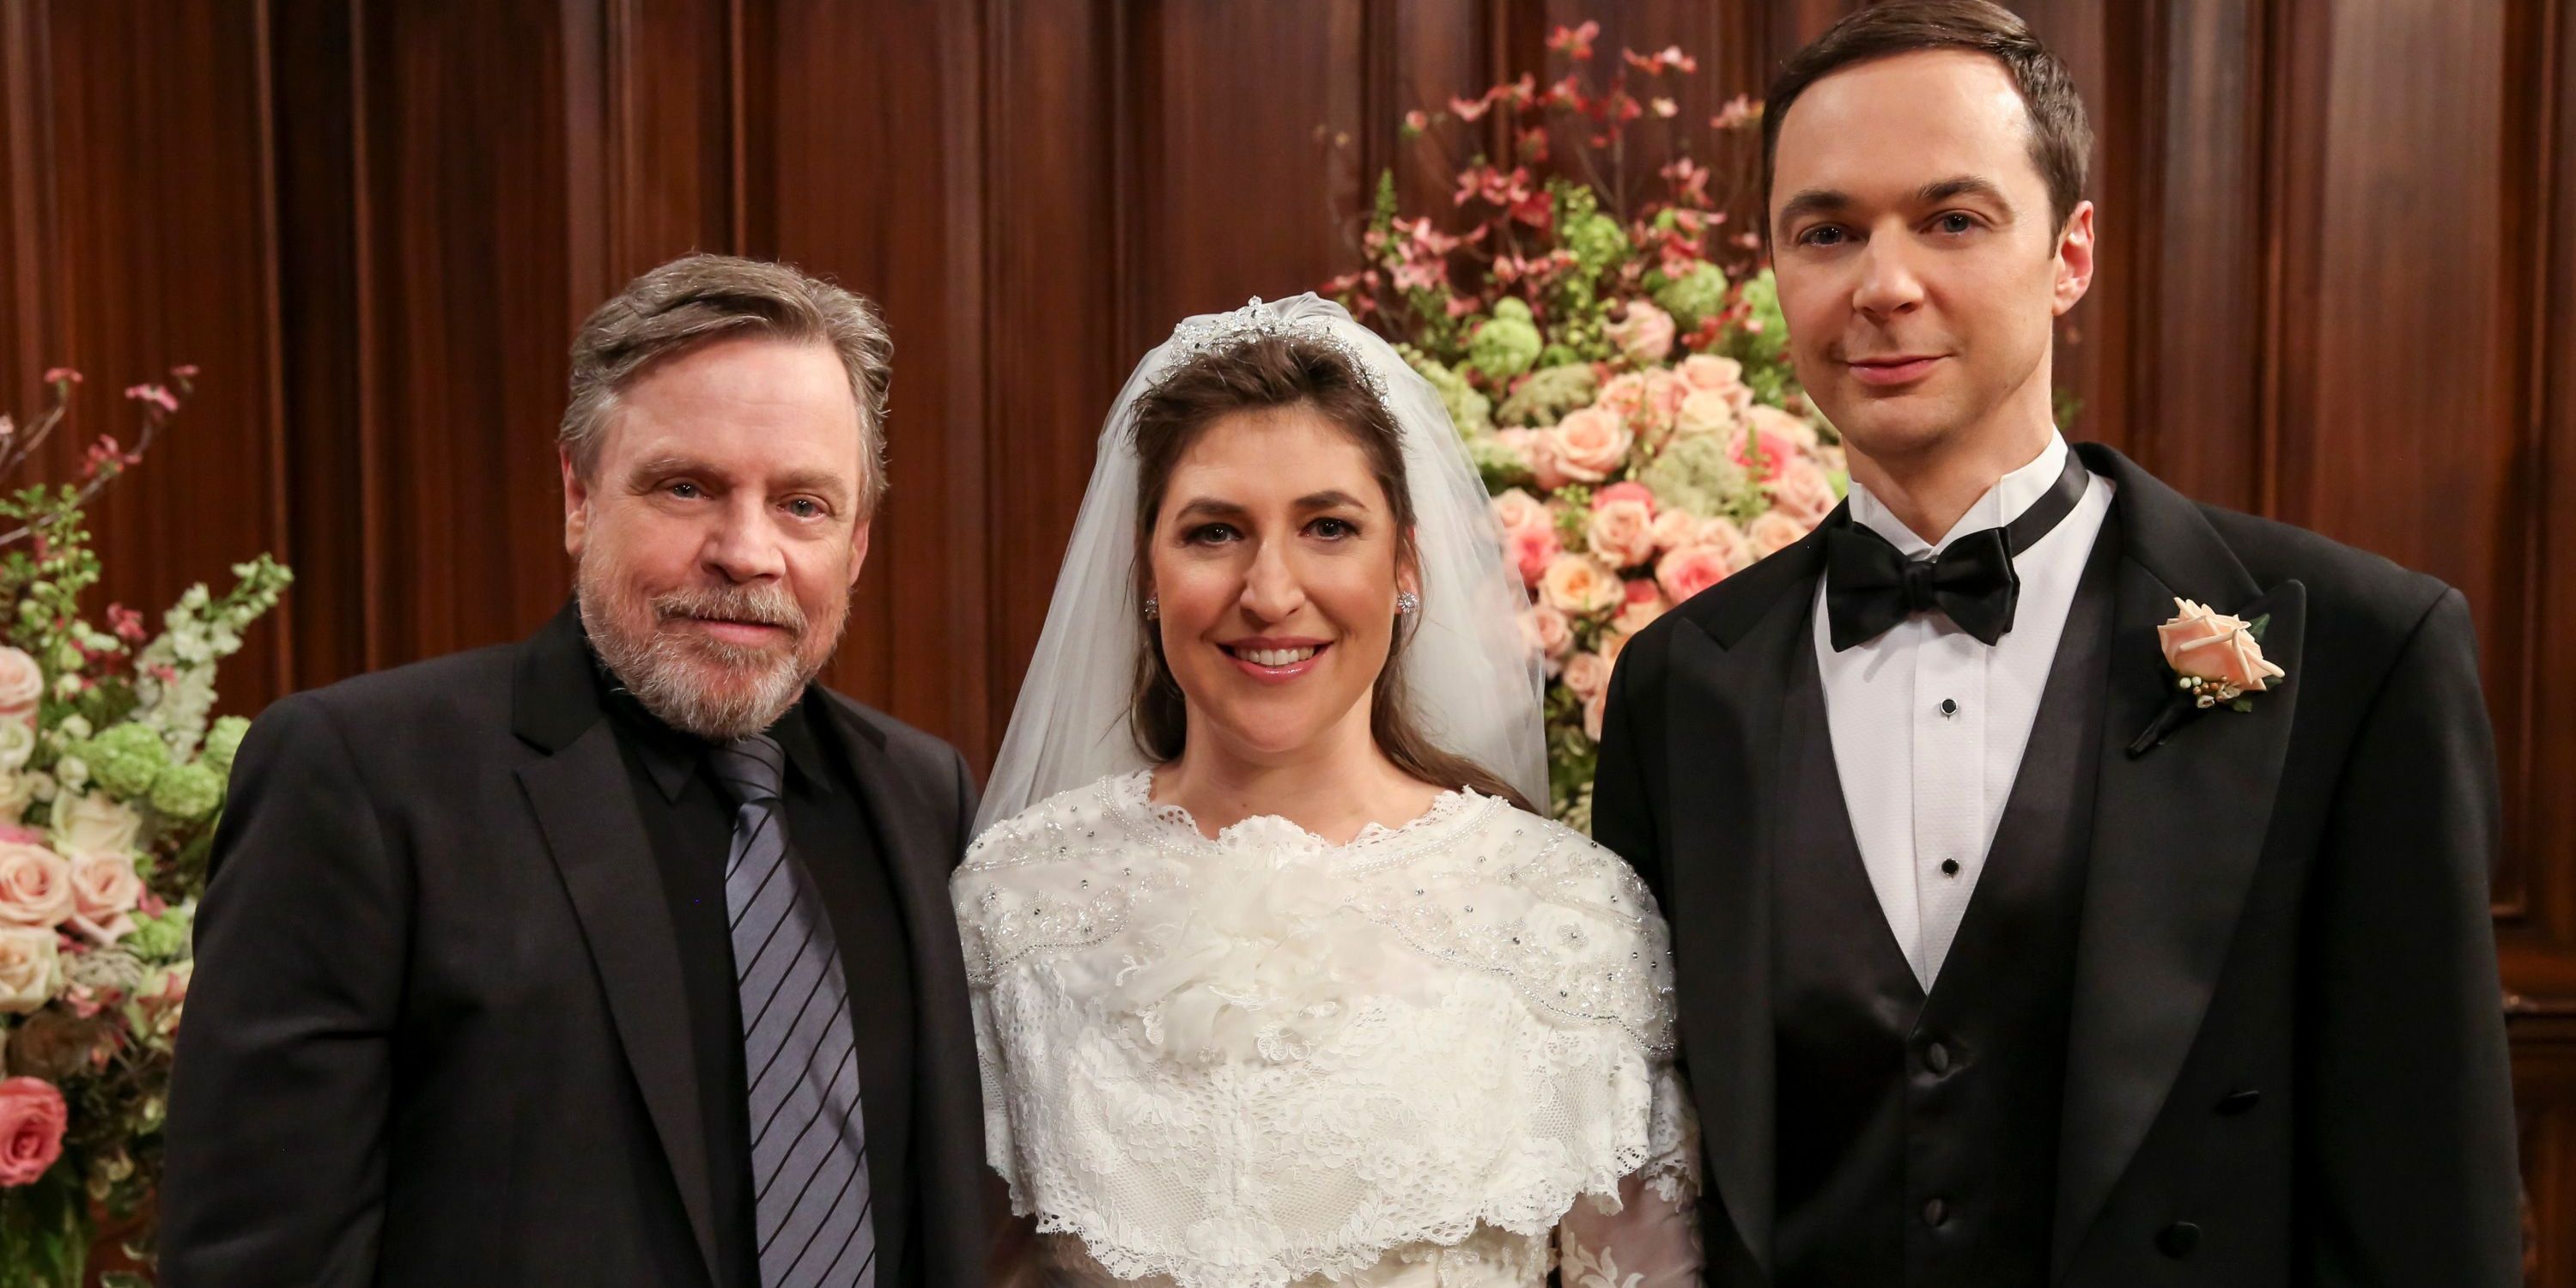 Mark Hamill on The Big Bang Theory Officiating Wedding